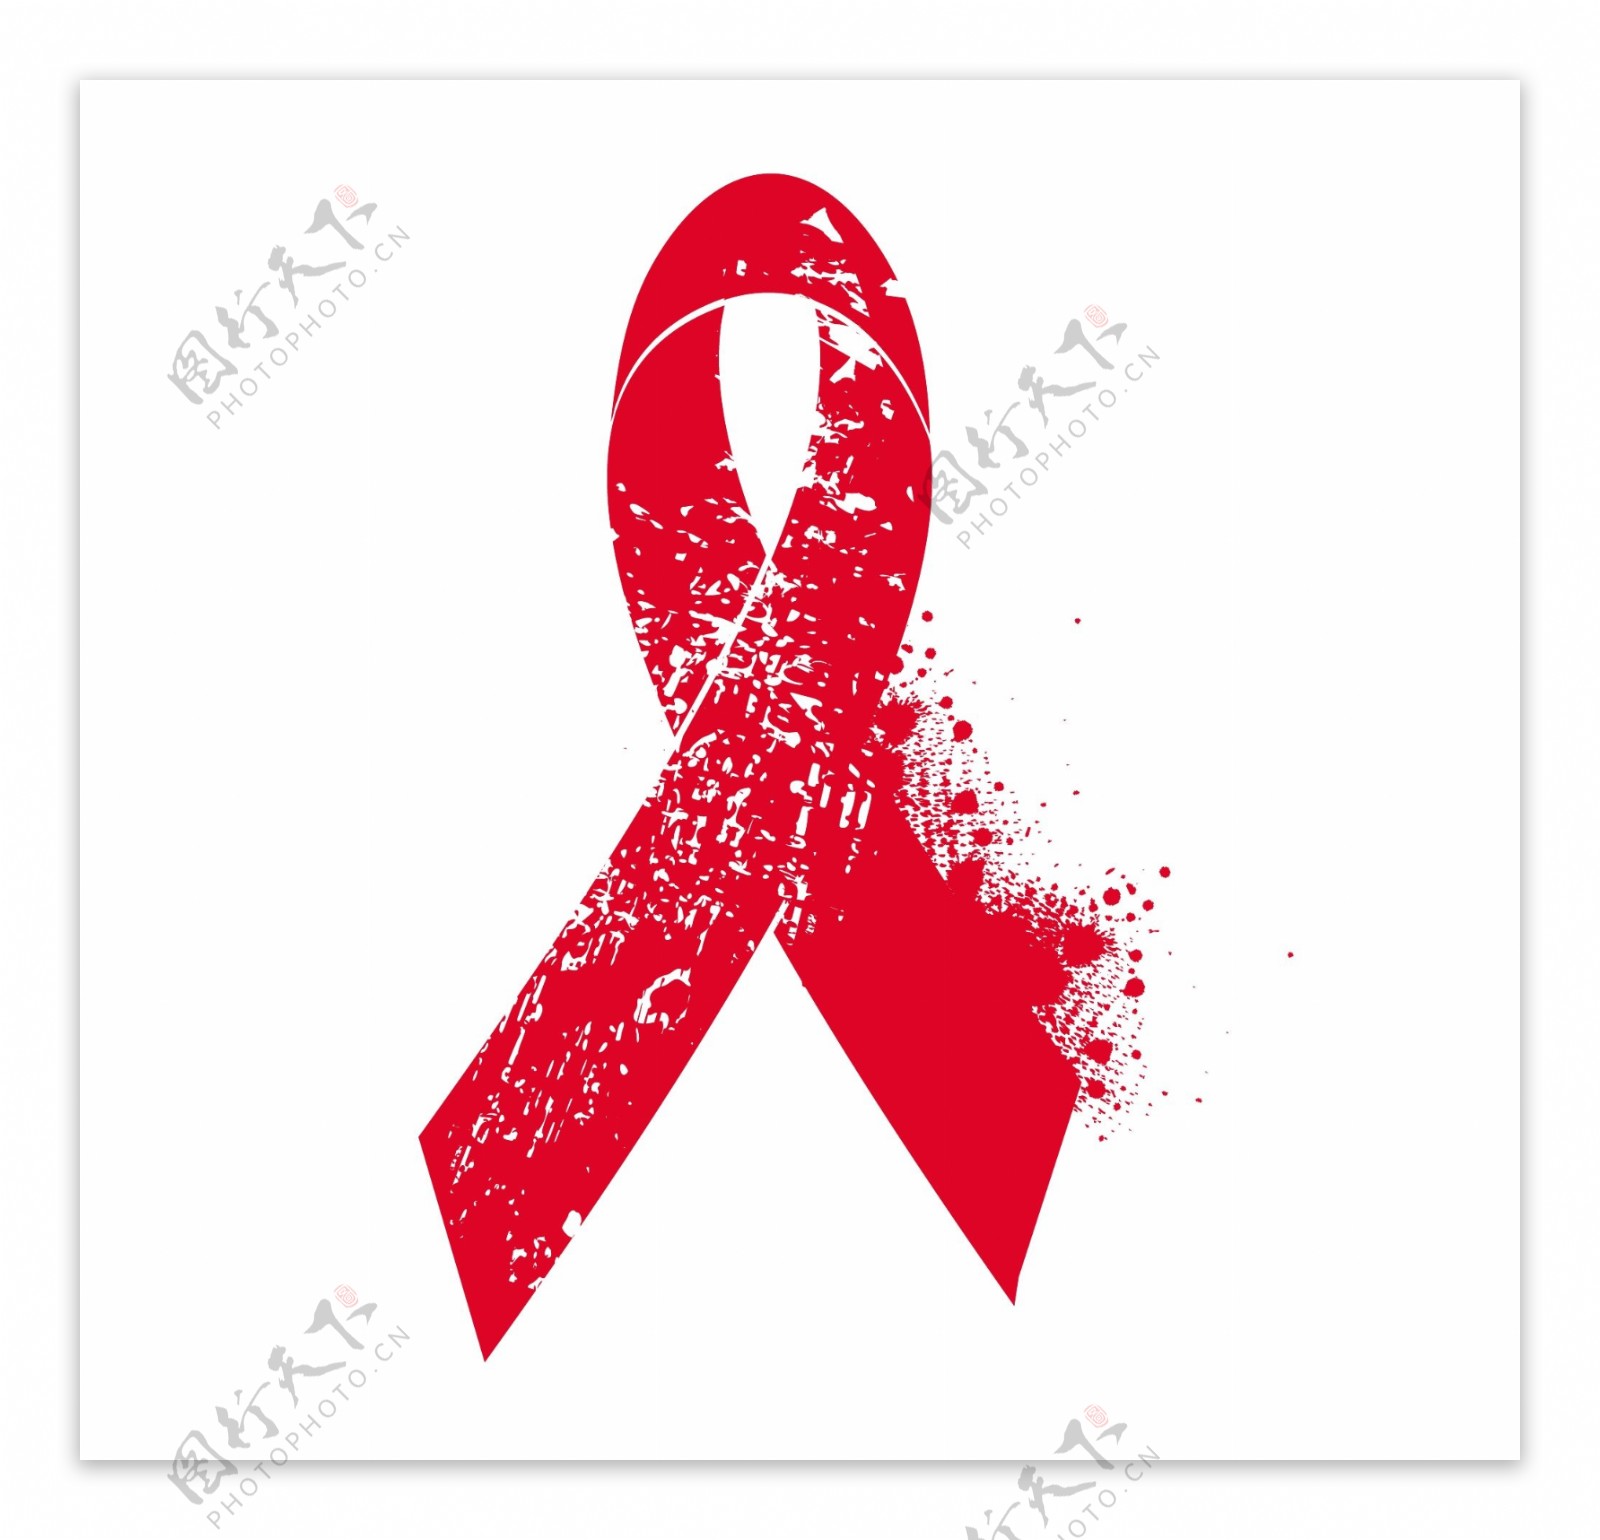 垃圾元素和红丝带艾滋病意识的象征